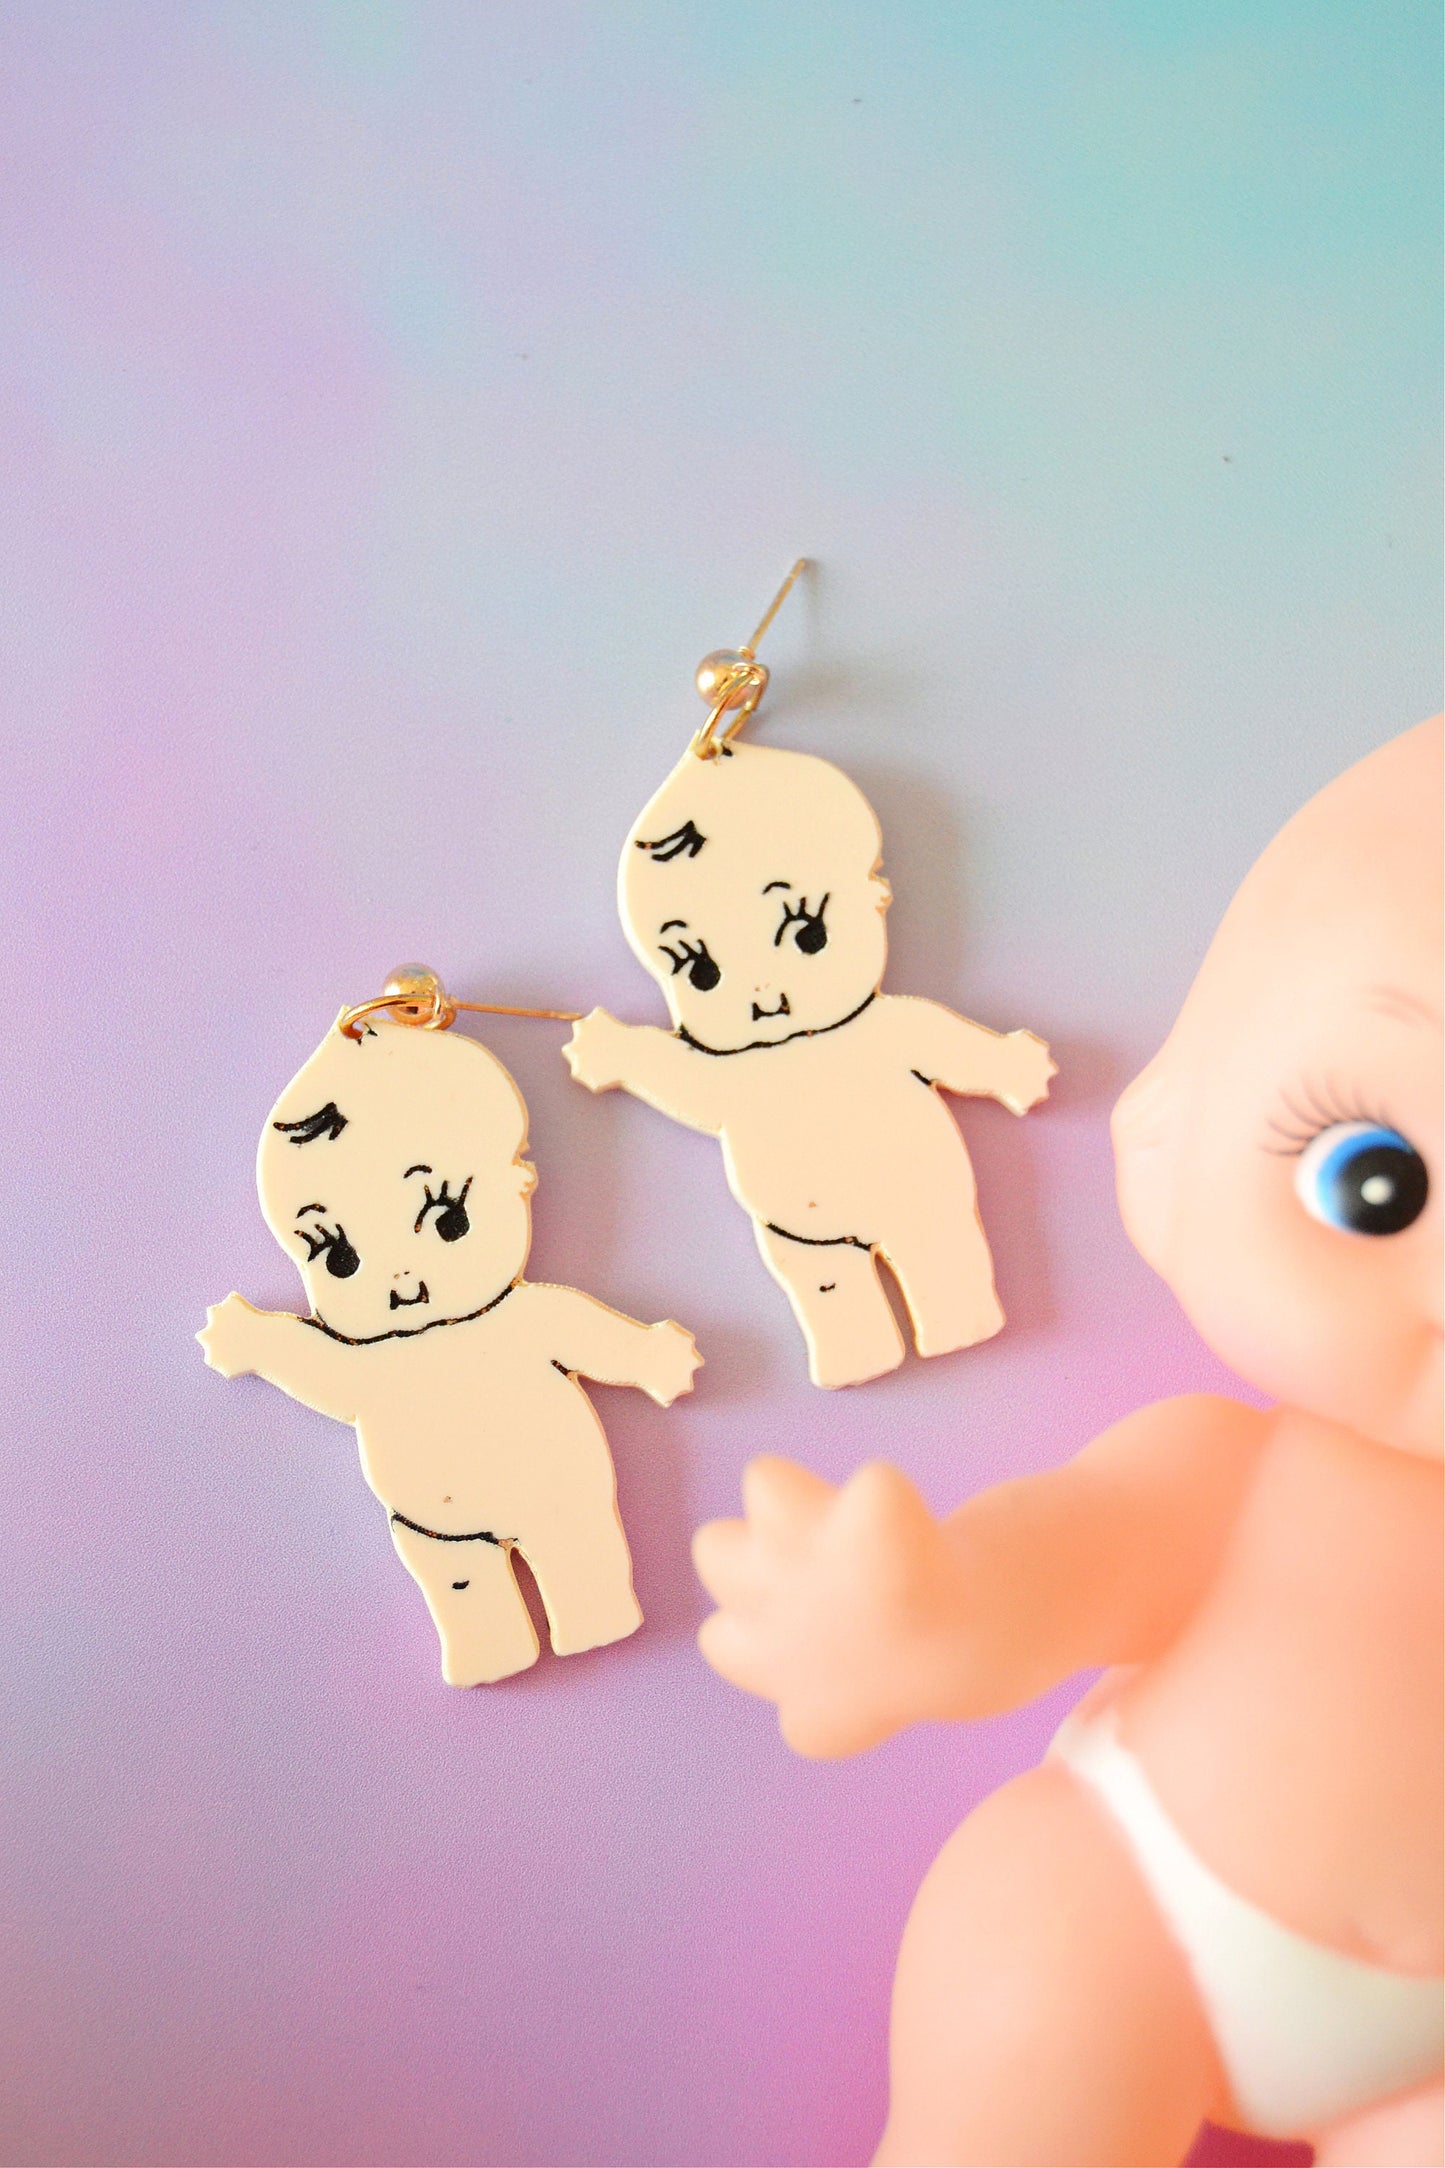 Kewpie Doll Earrings